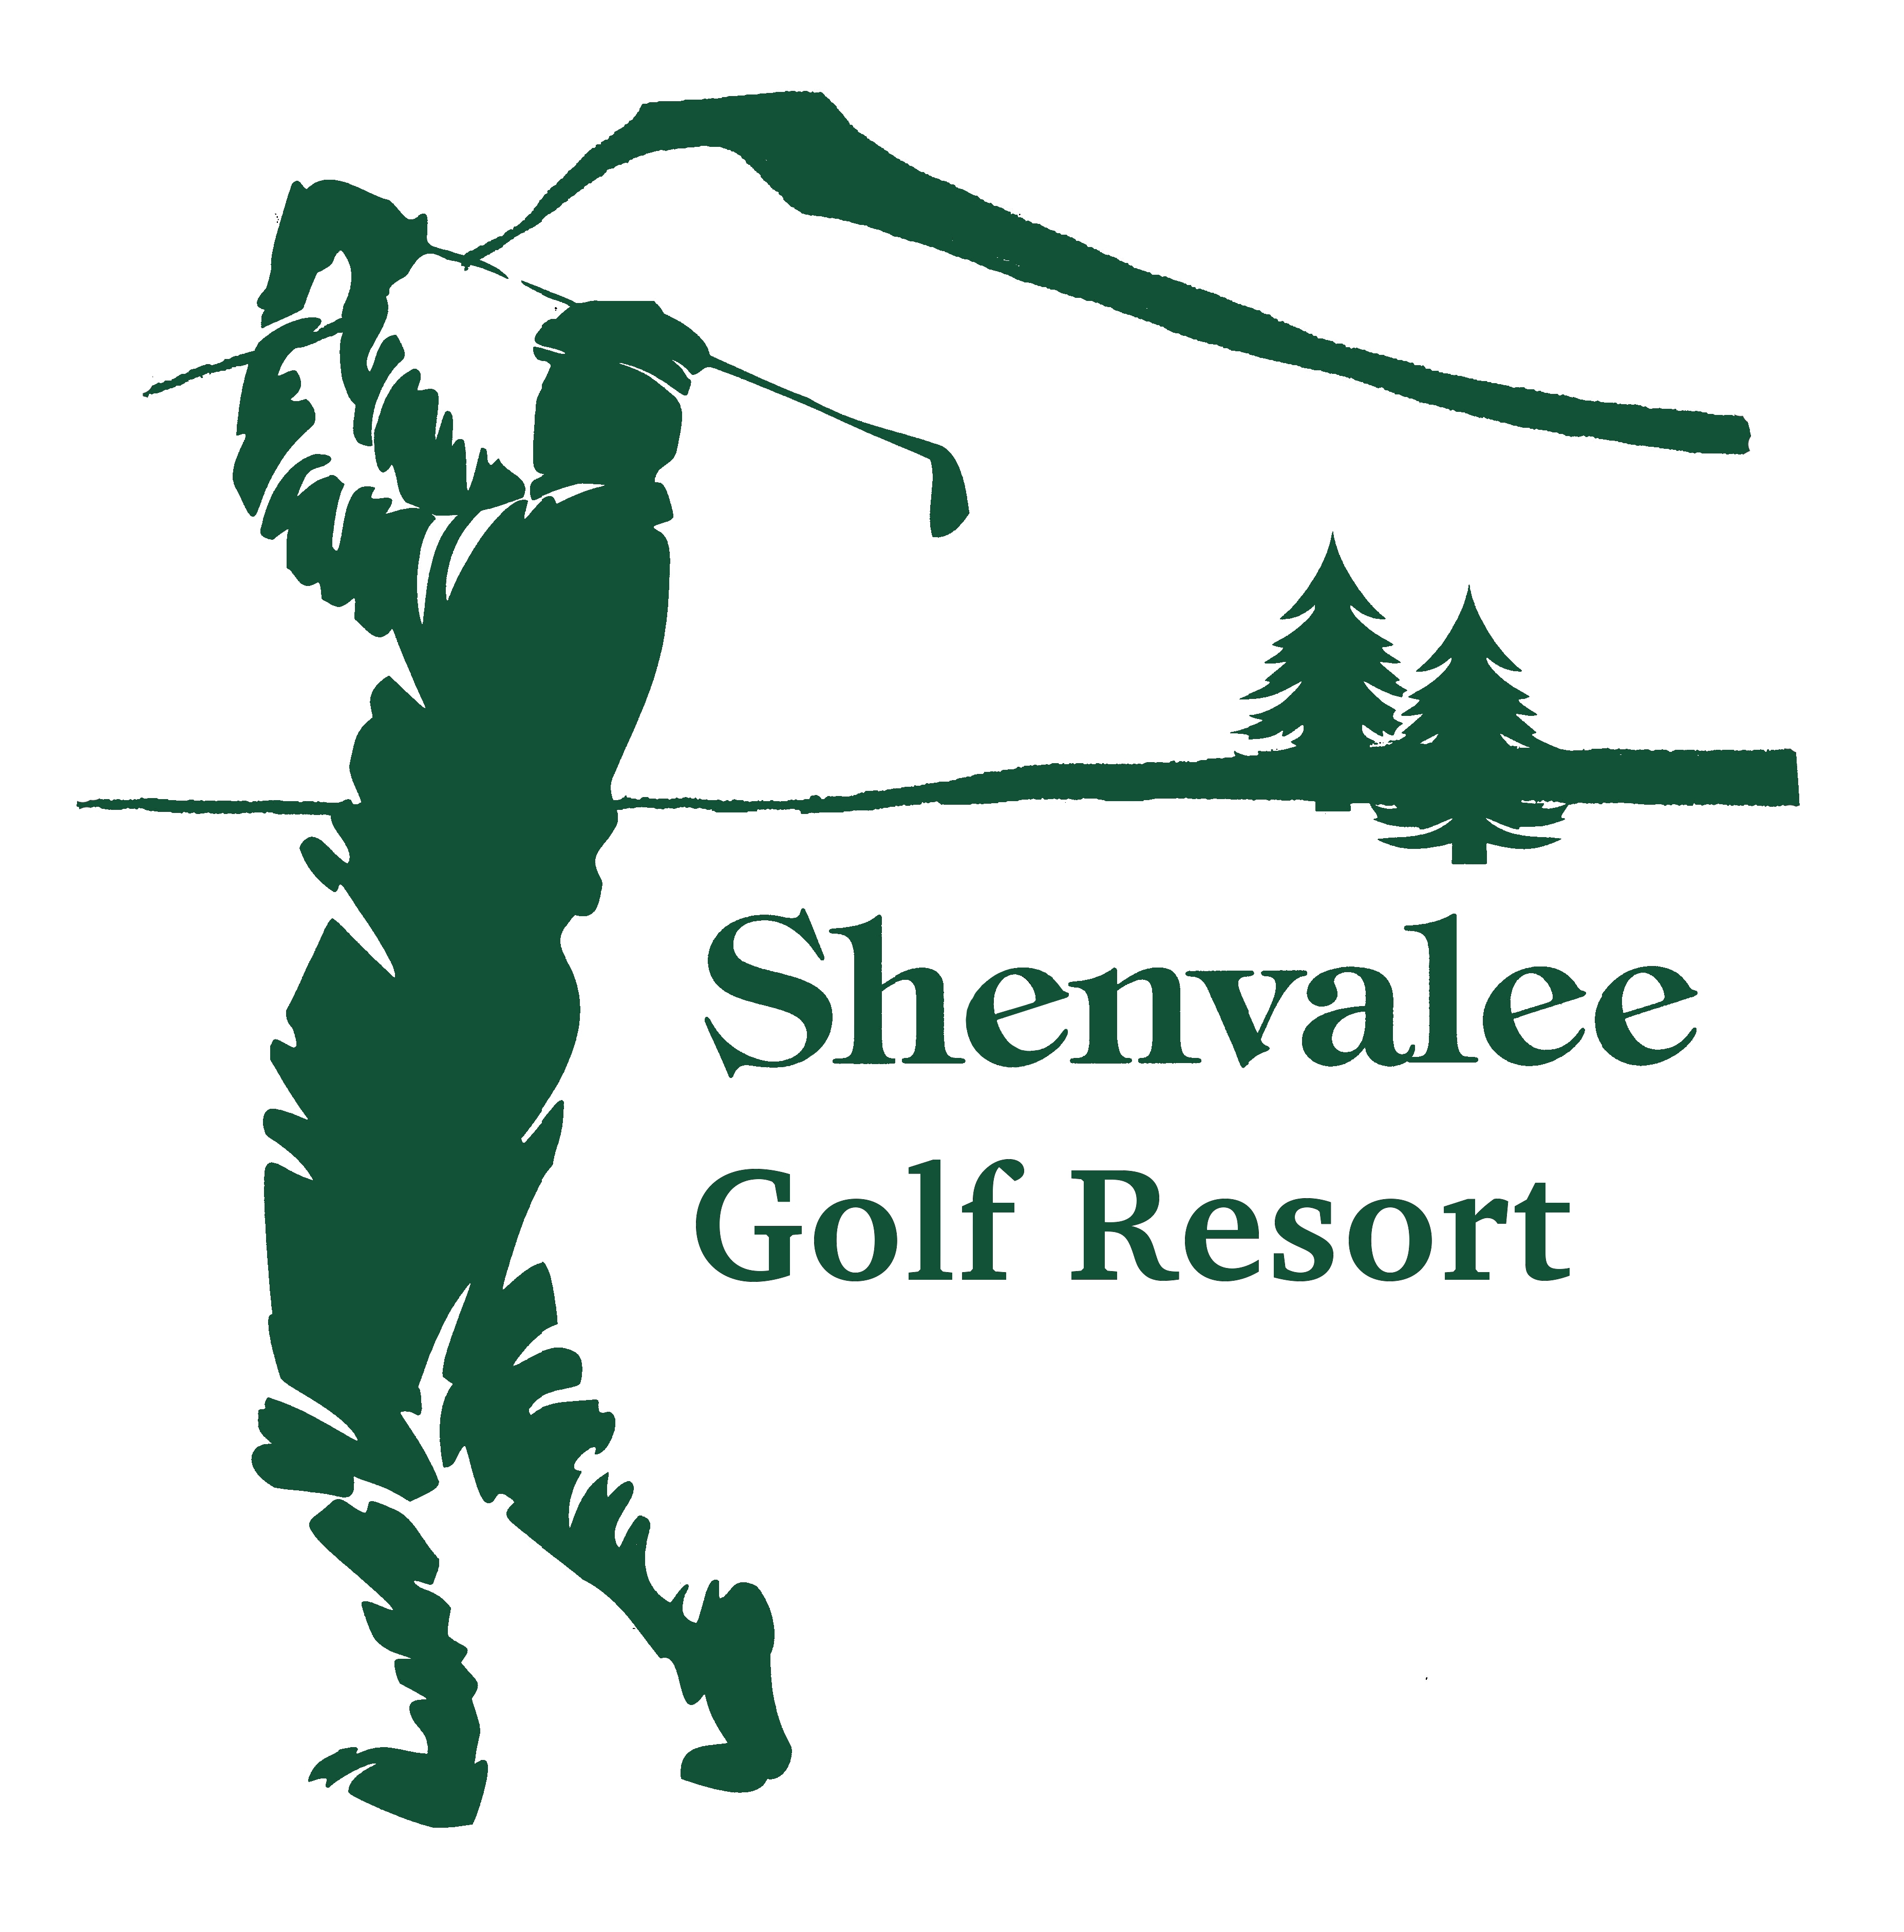 Shenvalee Golf Resort